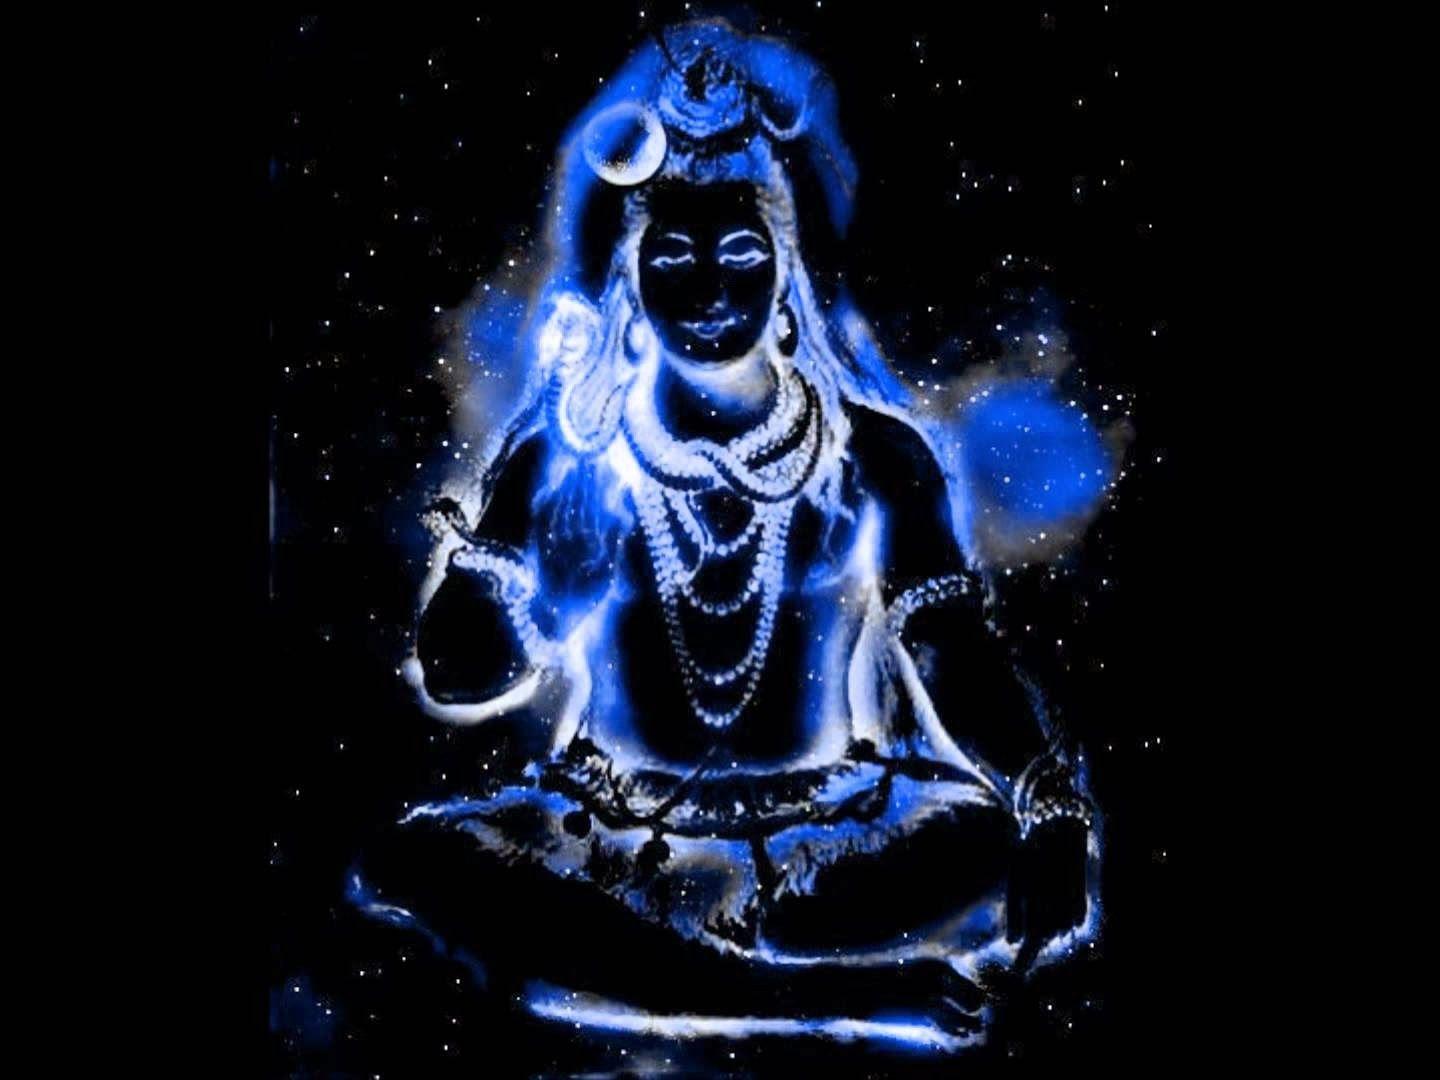 1440x1080 Tải xuống miễn phí Nhãn HD Thư viện HÌNH ẢNH HD Hình nền HD của Chúa Shiva [1440x1080] cho Máy tính để bàn, Di động & Máy tính bảng của bạn.  Khám phá Hình nền Chúa Shiva Độ phân giải cao.  Lord Shiva Image Hình nền, Chúa tể